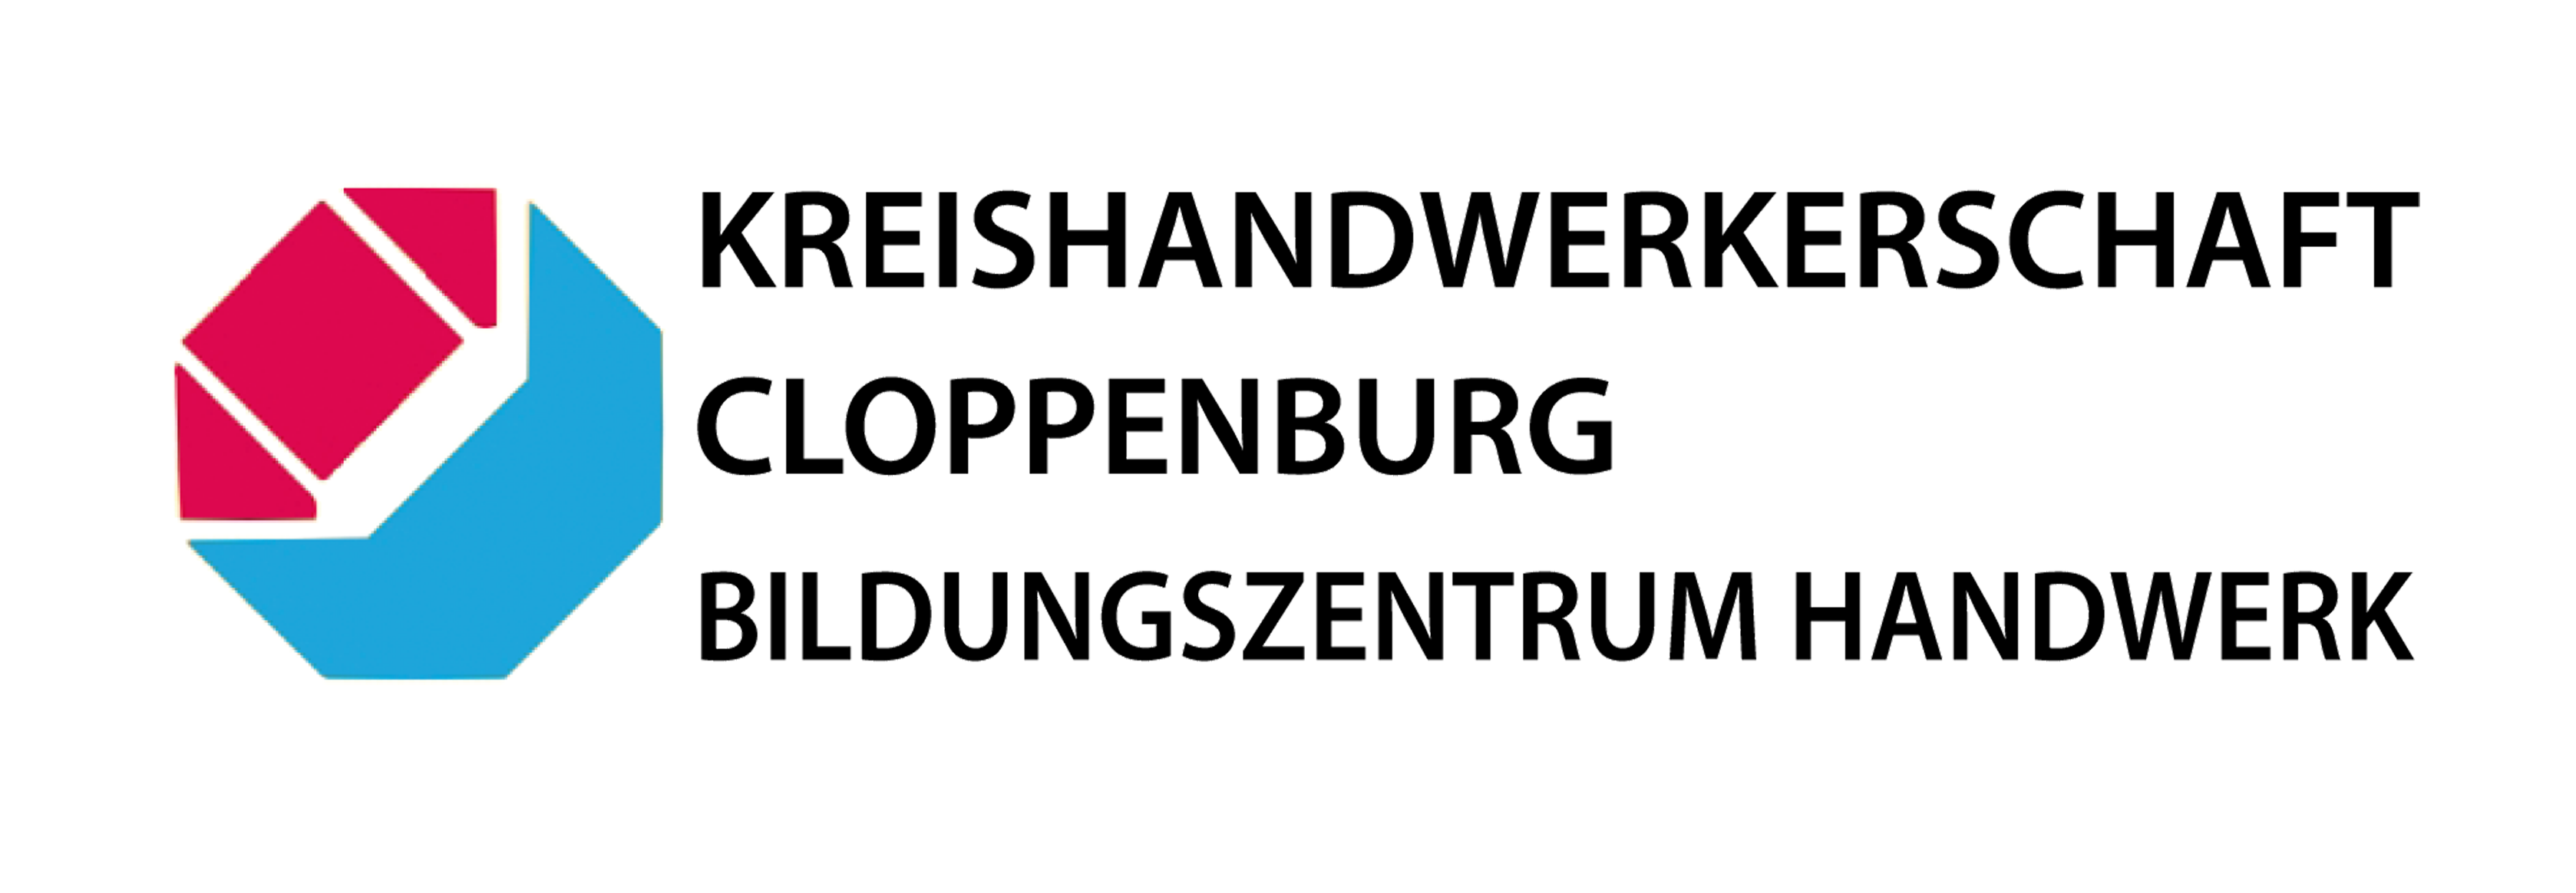 Kreishandwerkerschaft Cloppenburg